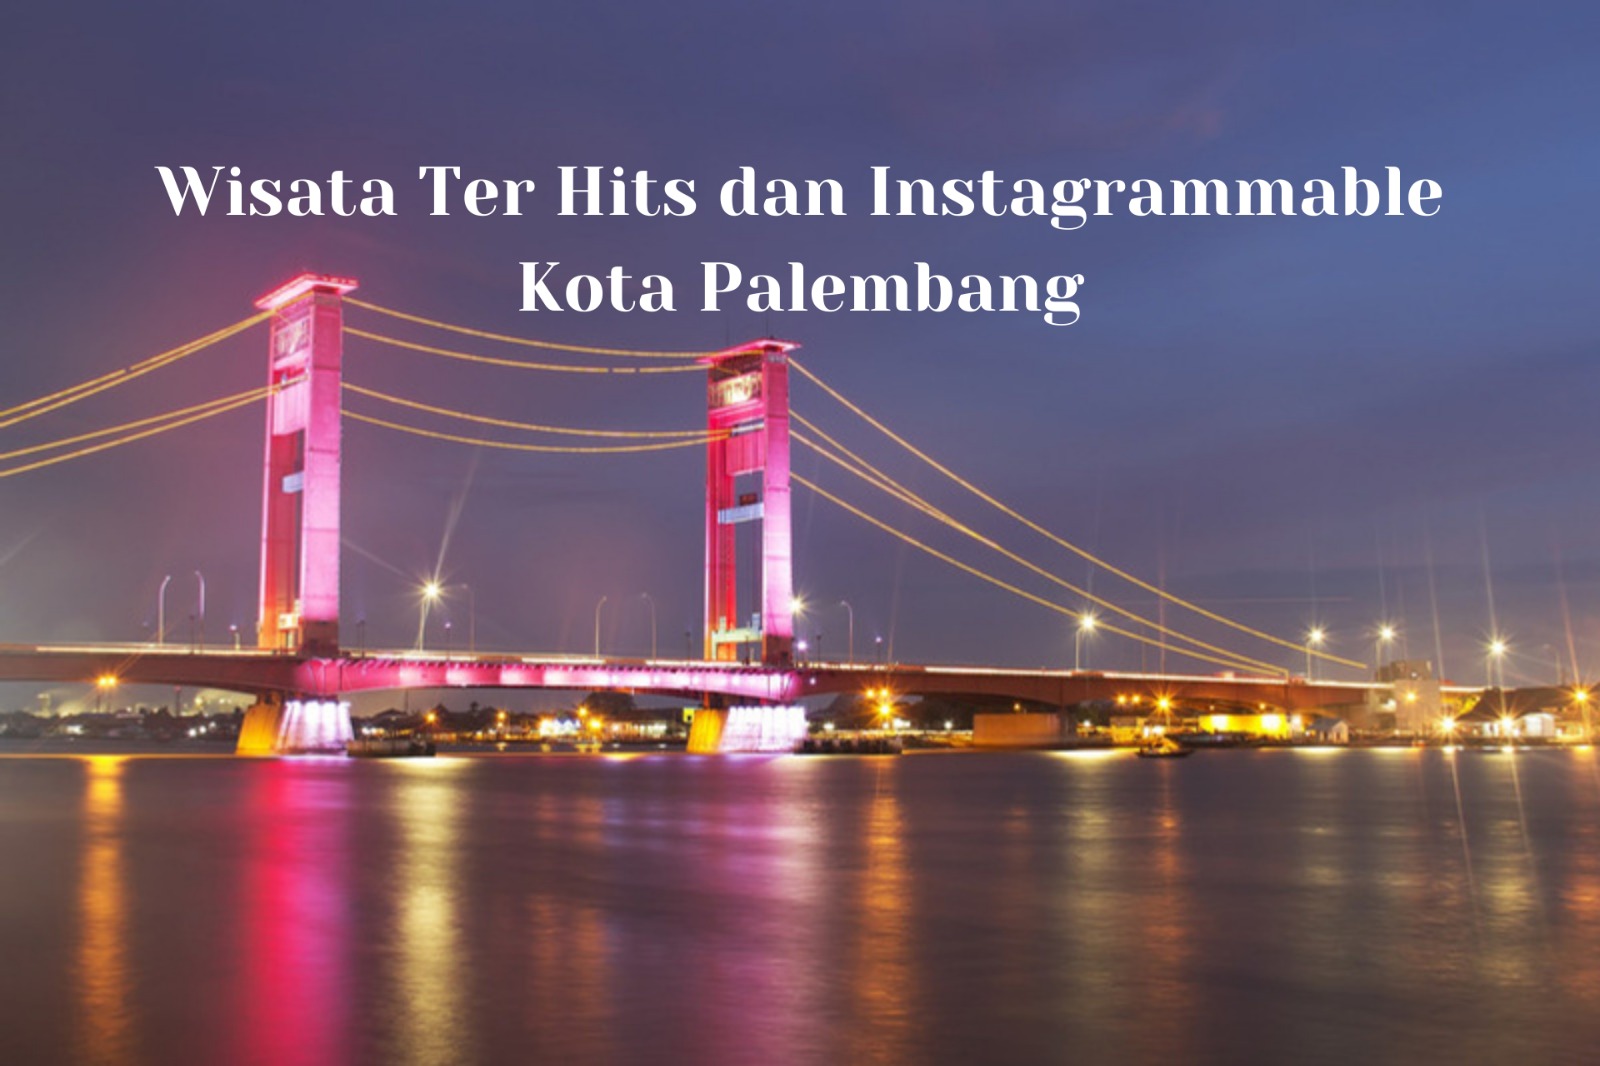 5 Wisata Ter Hits dan Instagramable di Palembang, Cocok Sebagai Destinasi Liburan